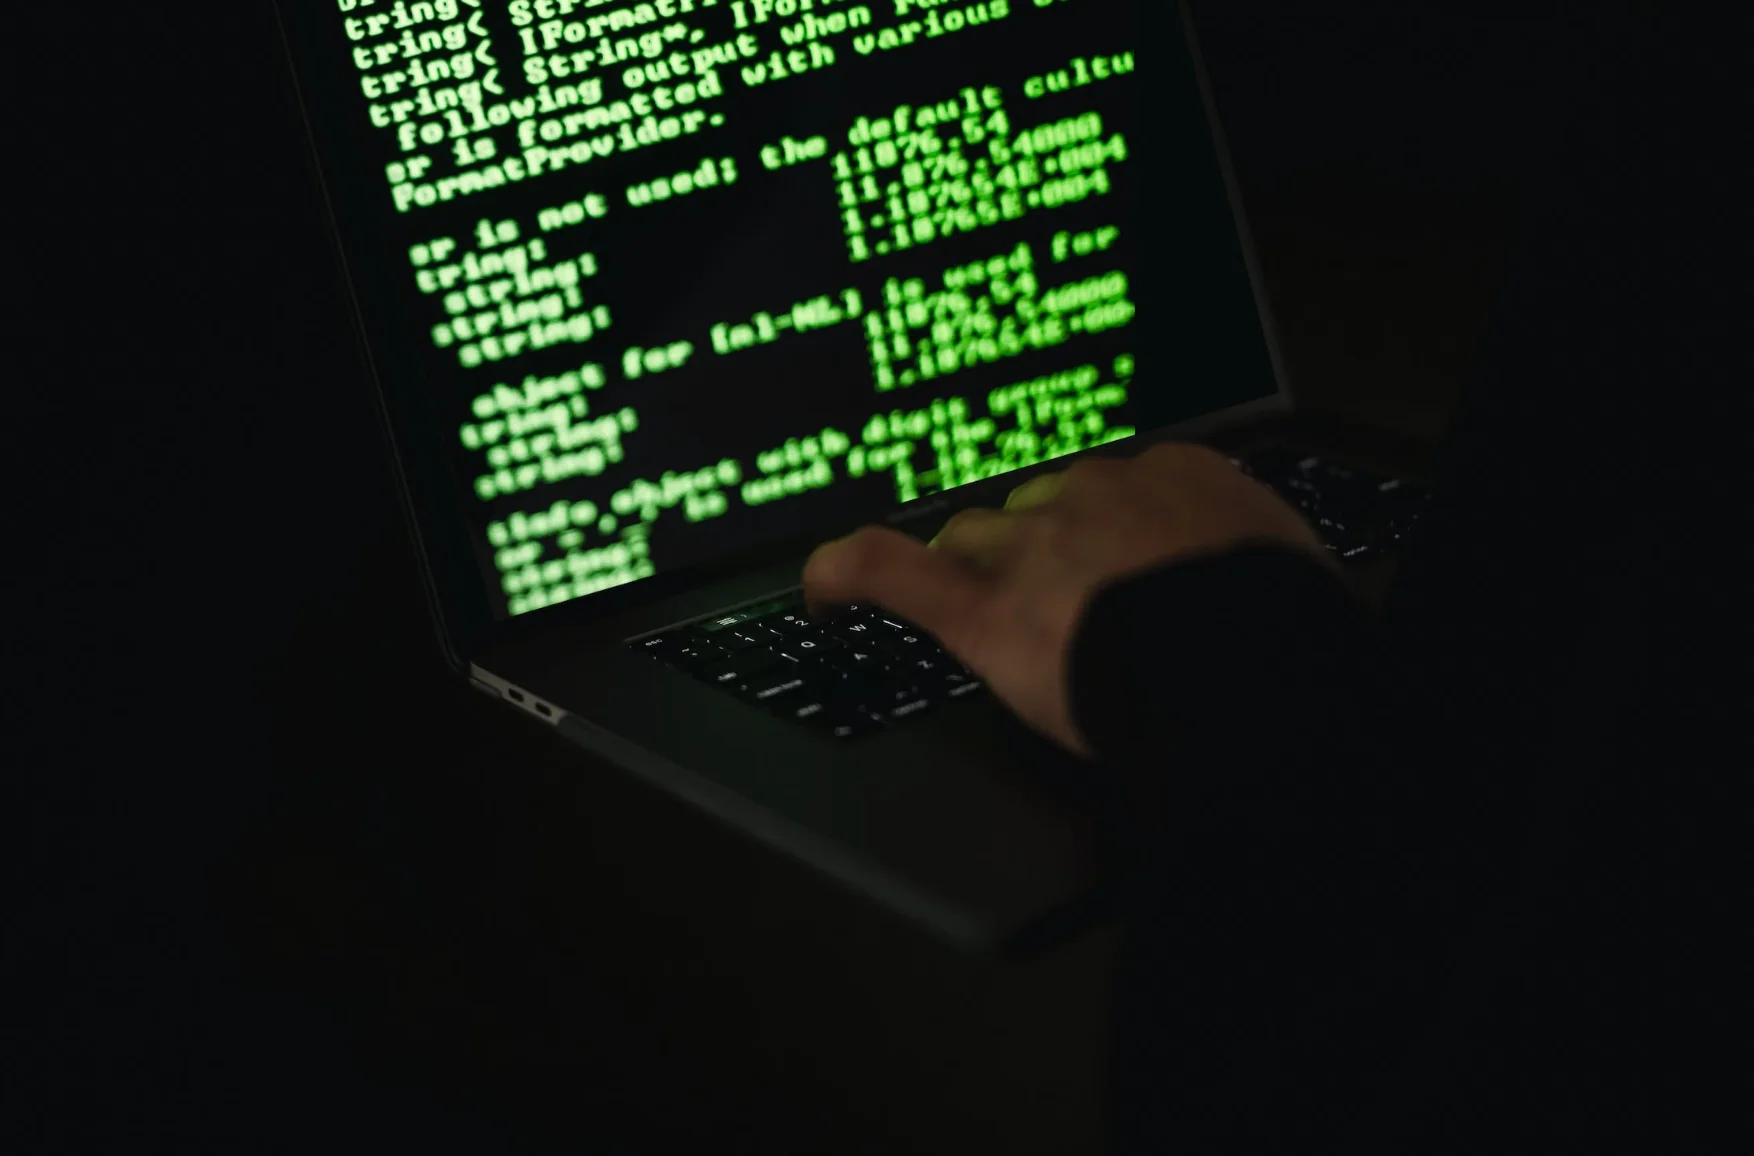 Sebanyak 337 juta data Dukcapil diduga bocor dan dijual di forum peretas atau hacker.